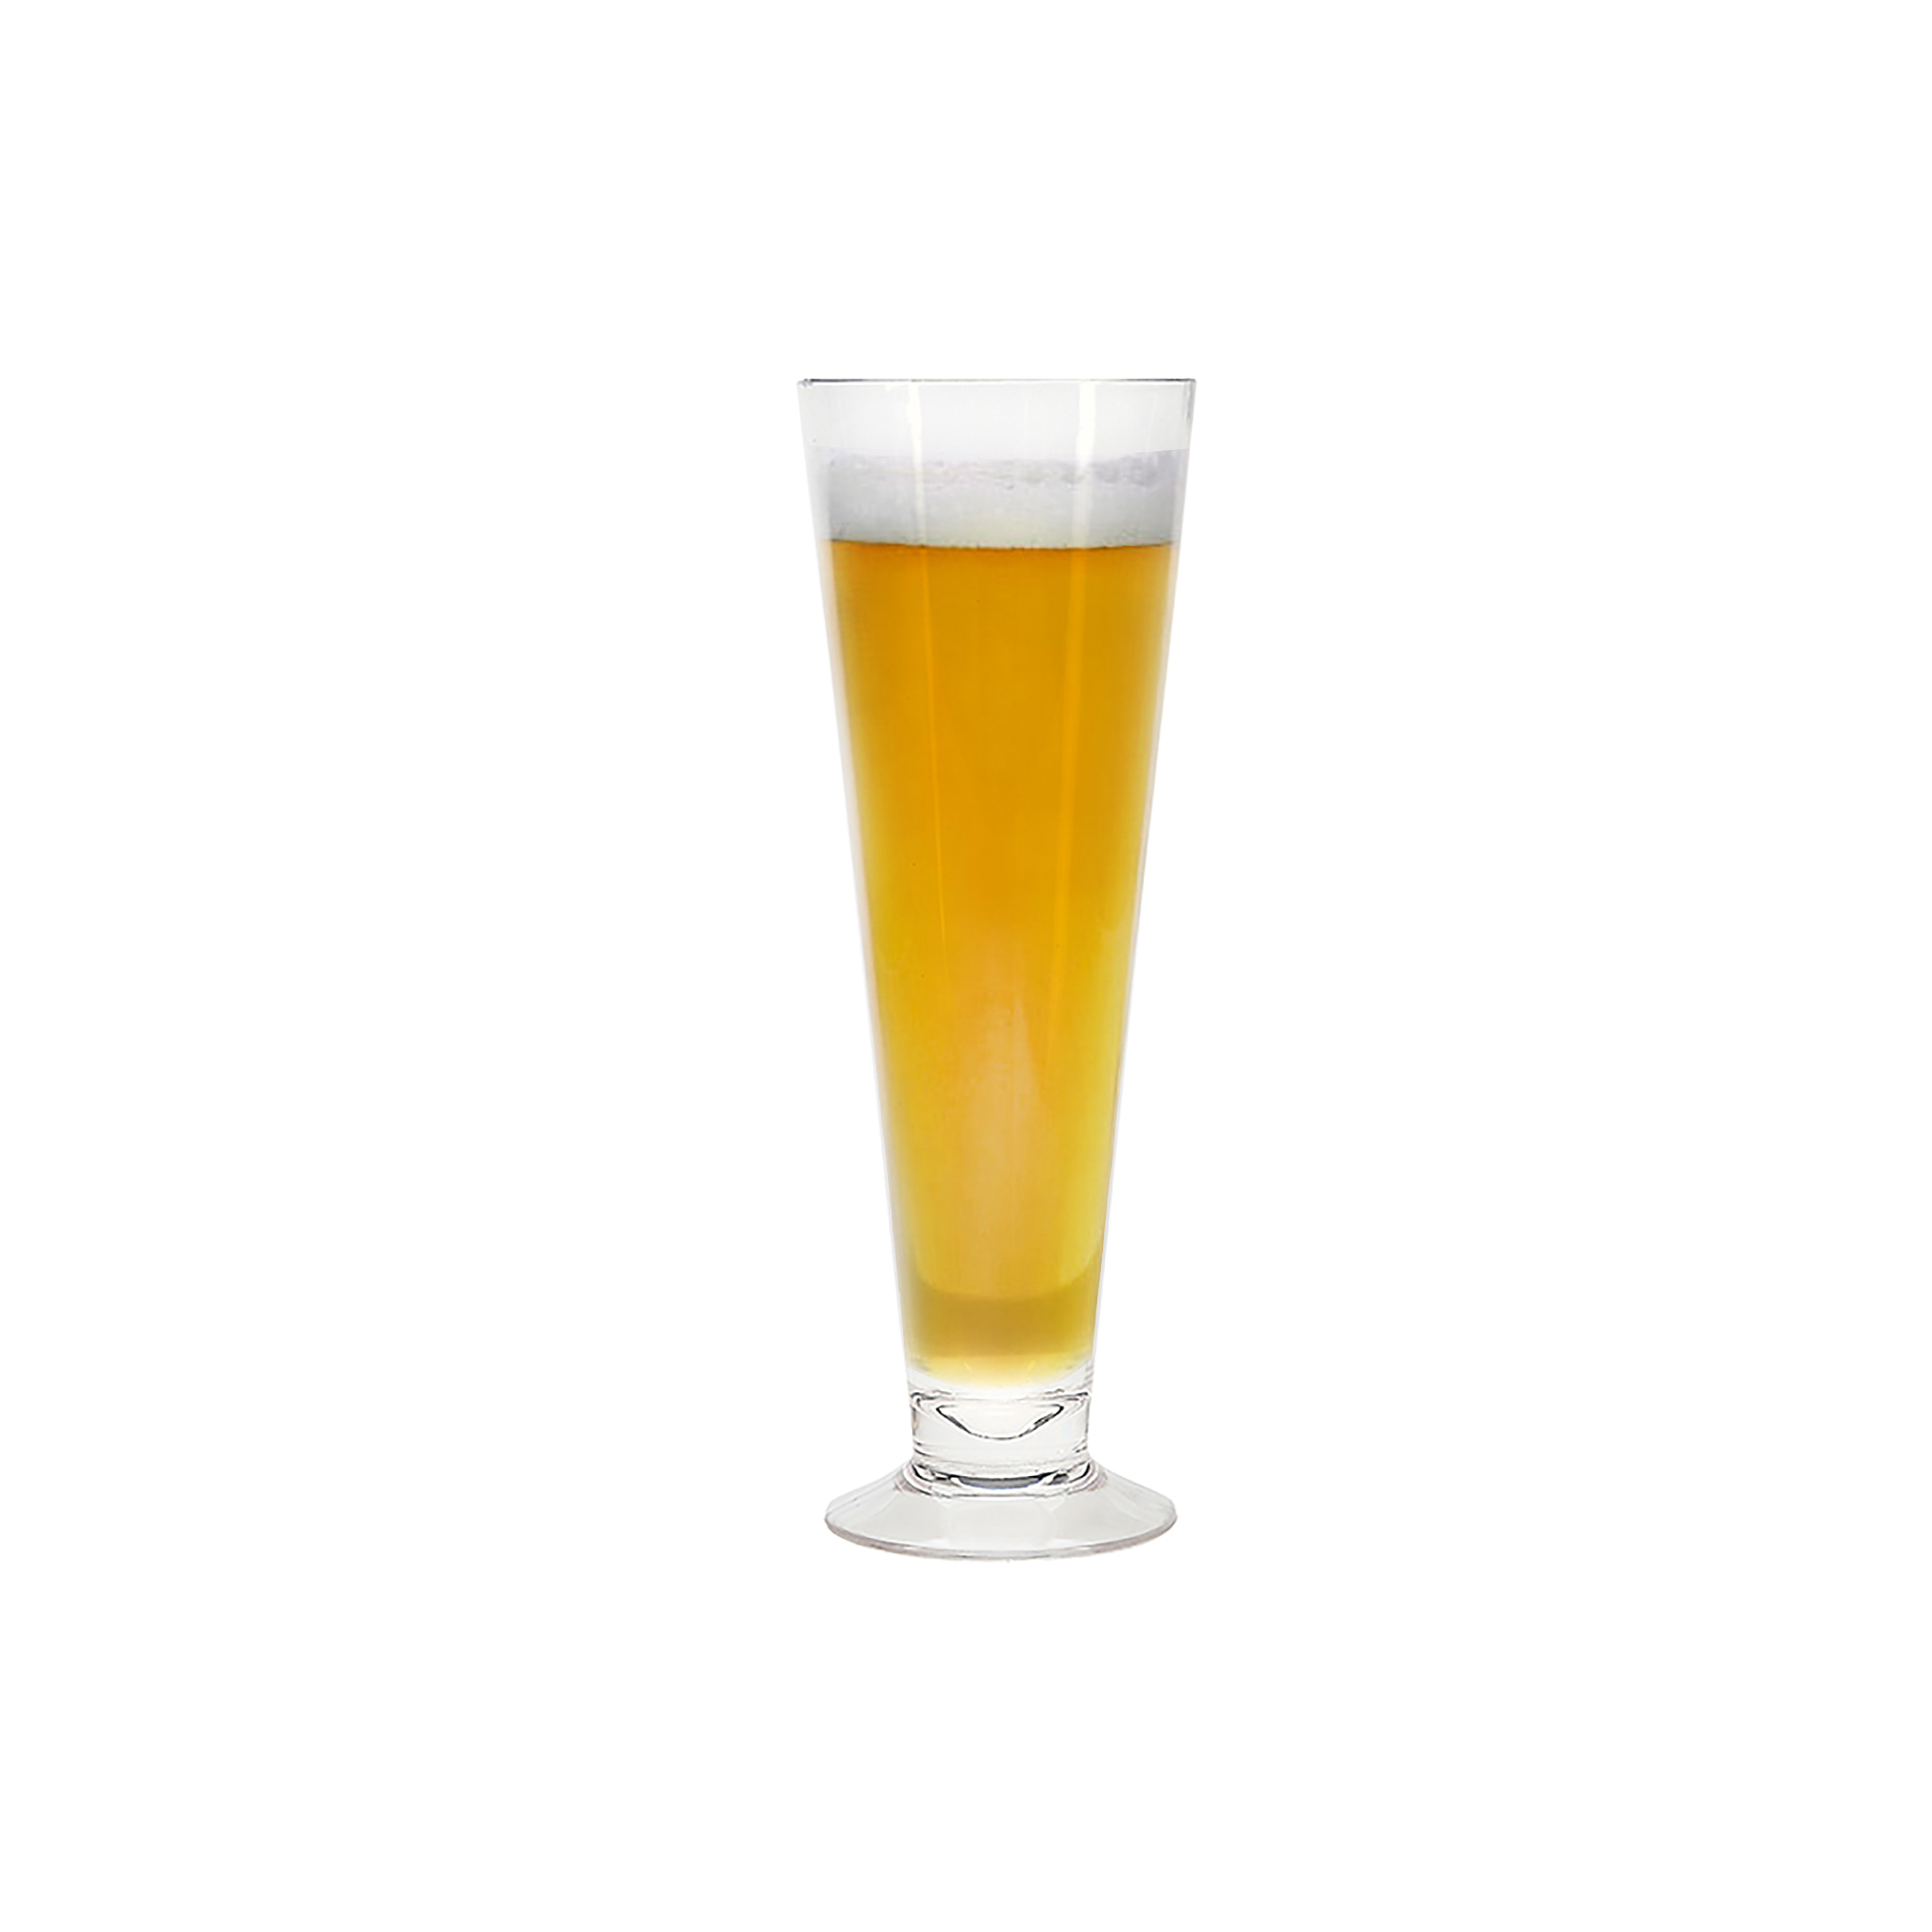 https://impulseenterprises.com/wp-content/uploads/2020/08/Capri-Pilsner-Clear_with-Beer.jpg